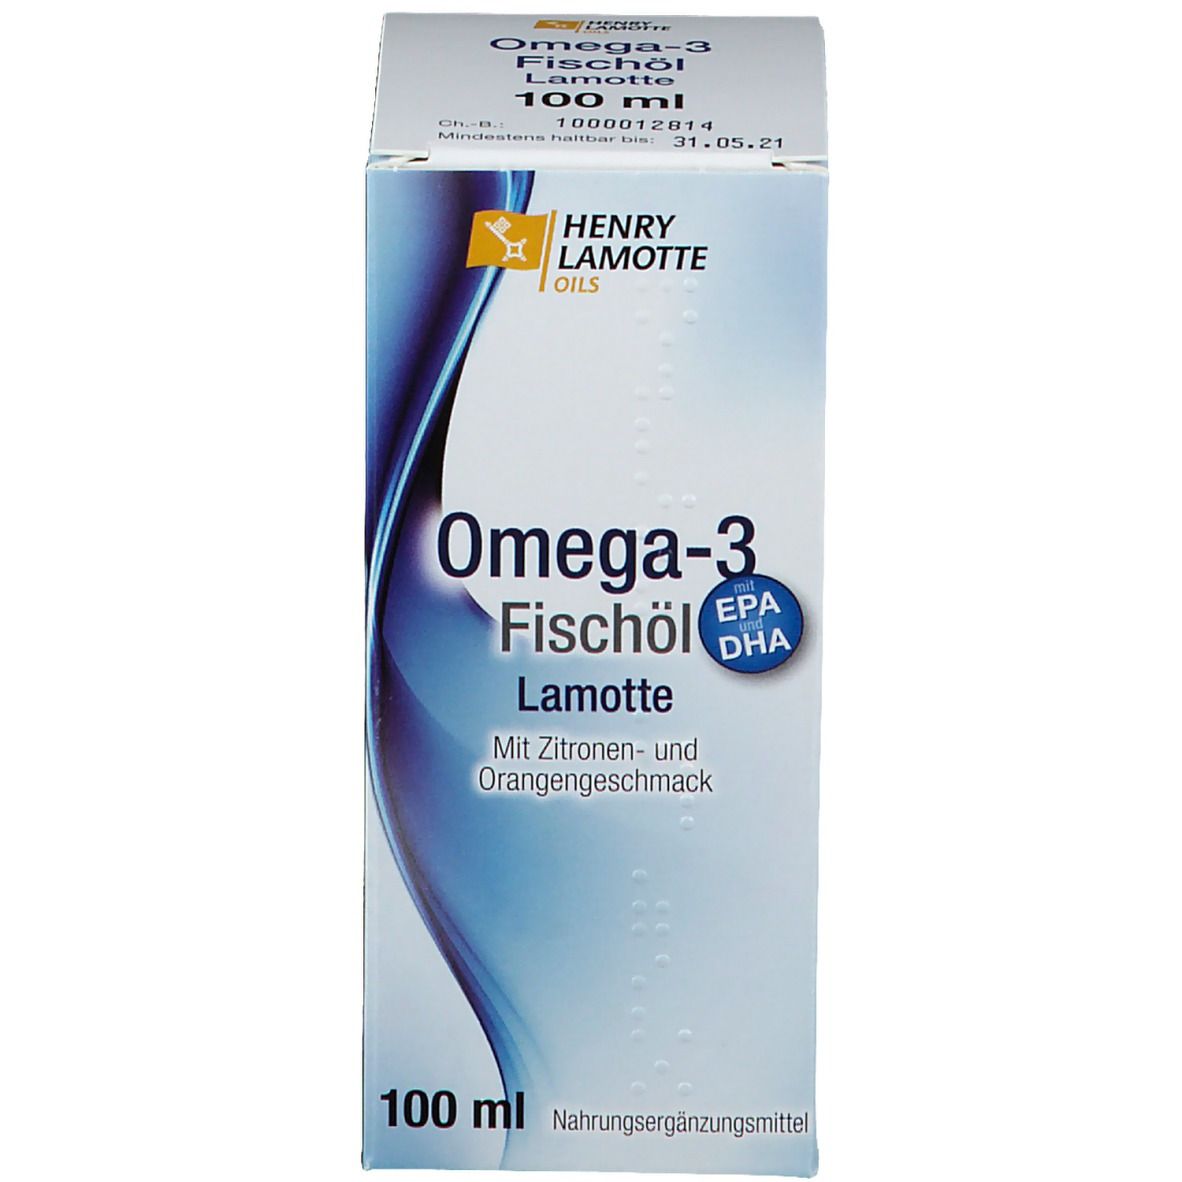 HENRY LAMOTTE OILS Omega-3 Fischöl